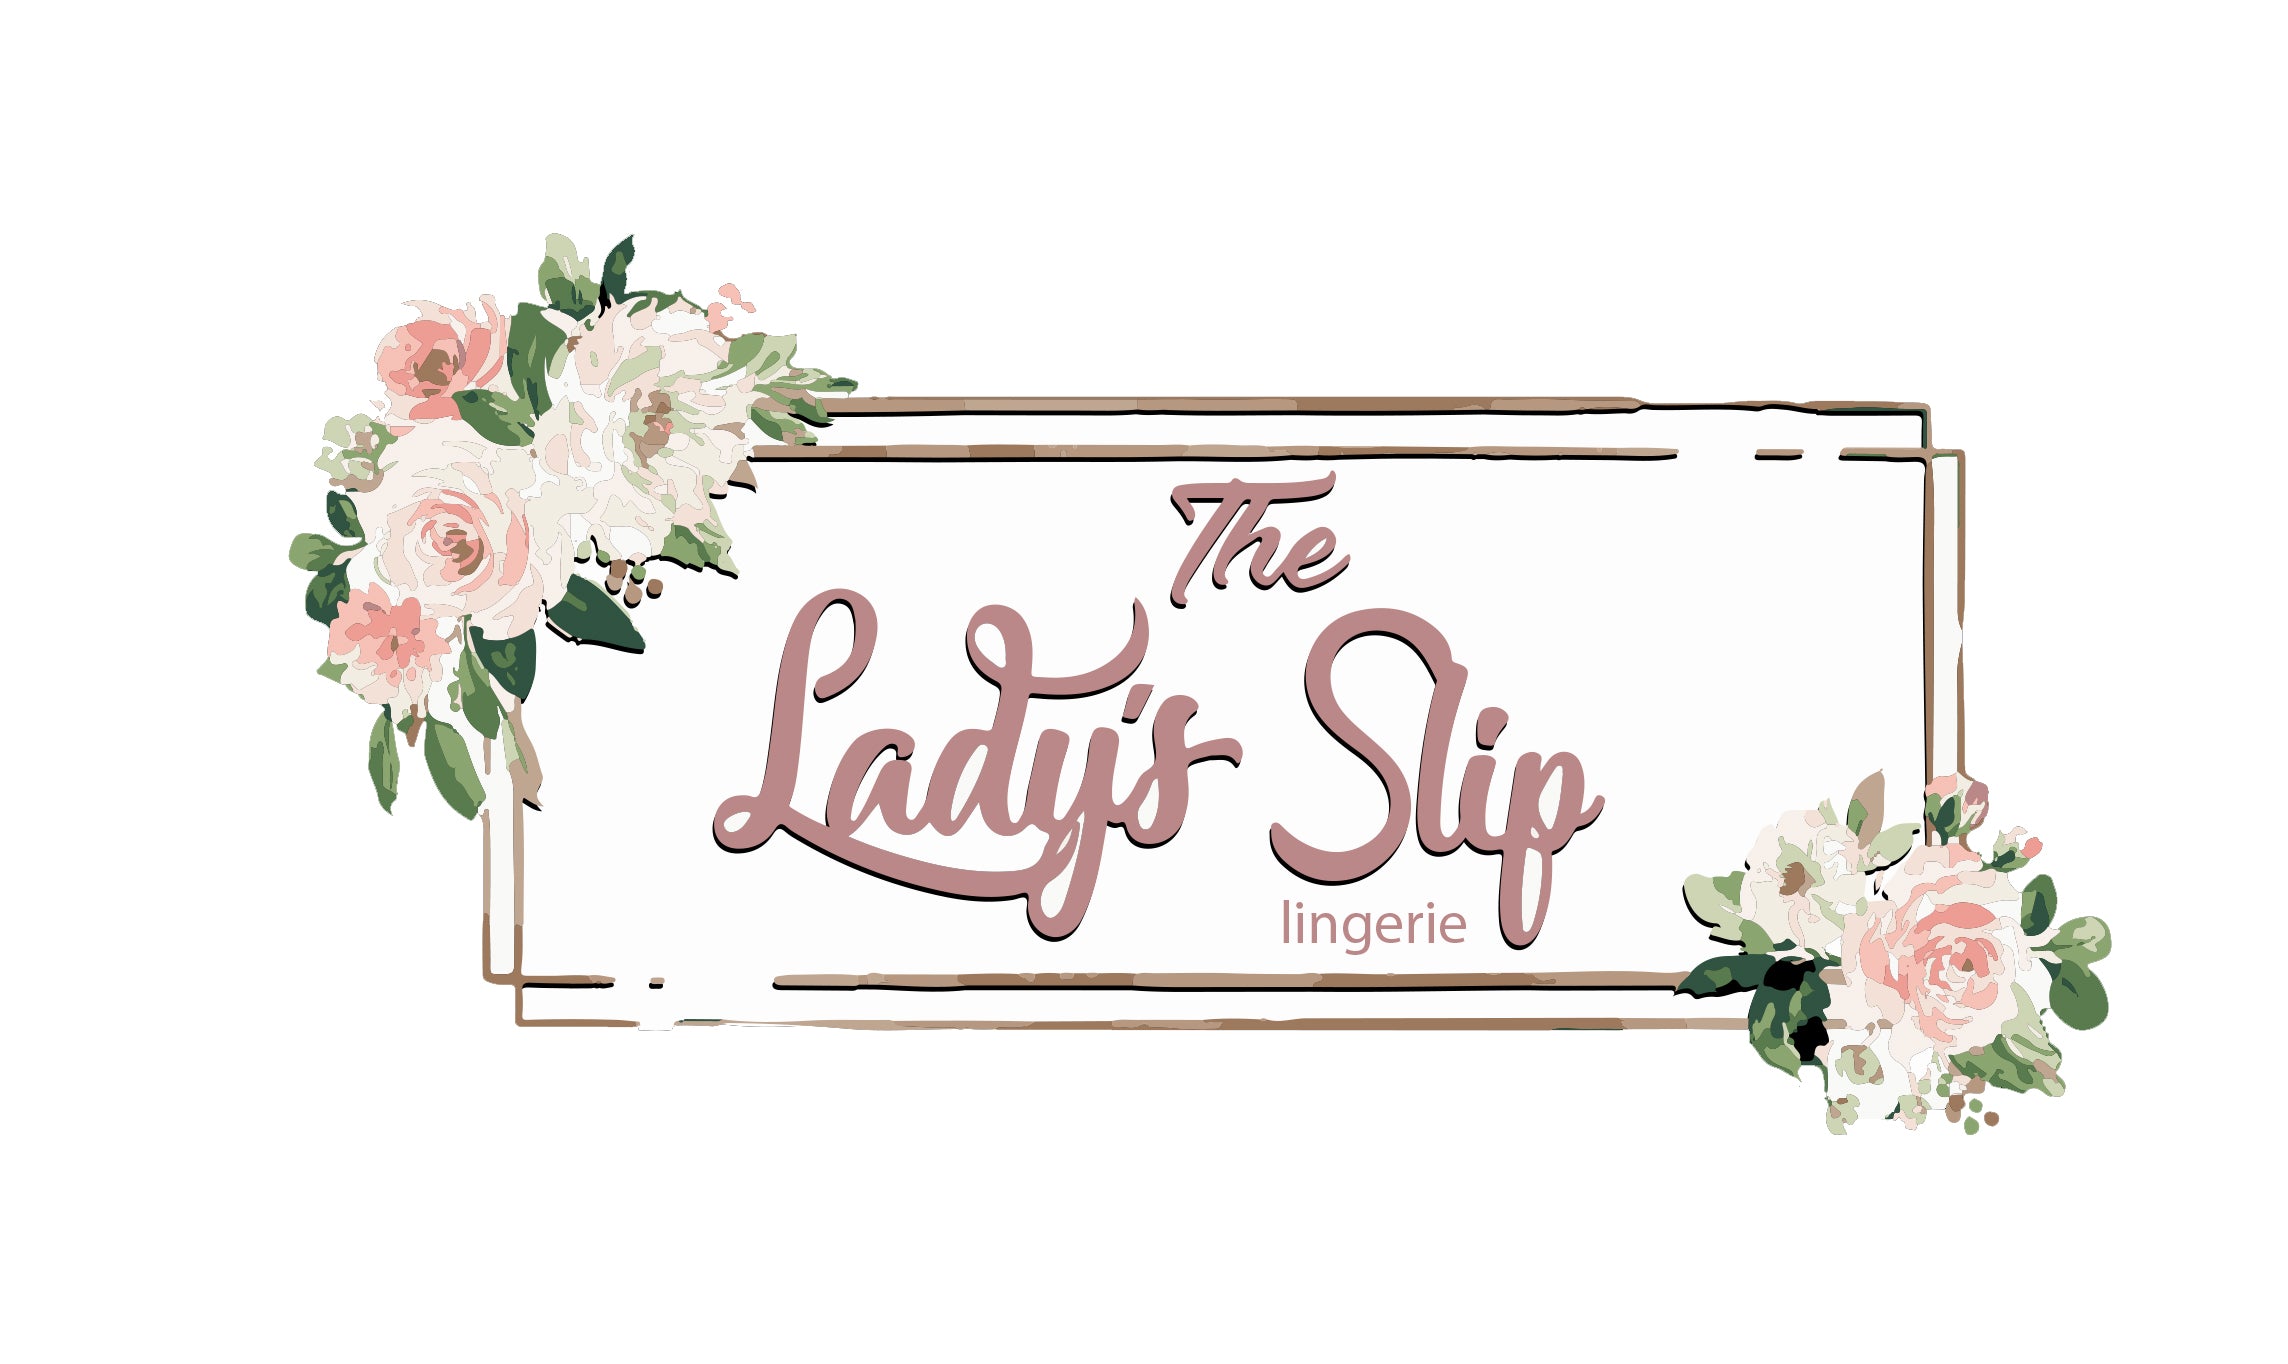 The Lady's Slip Lingerie